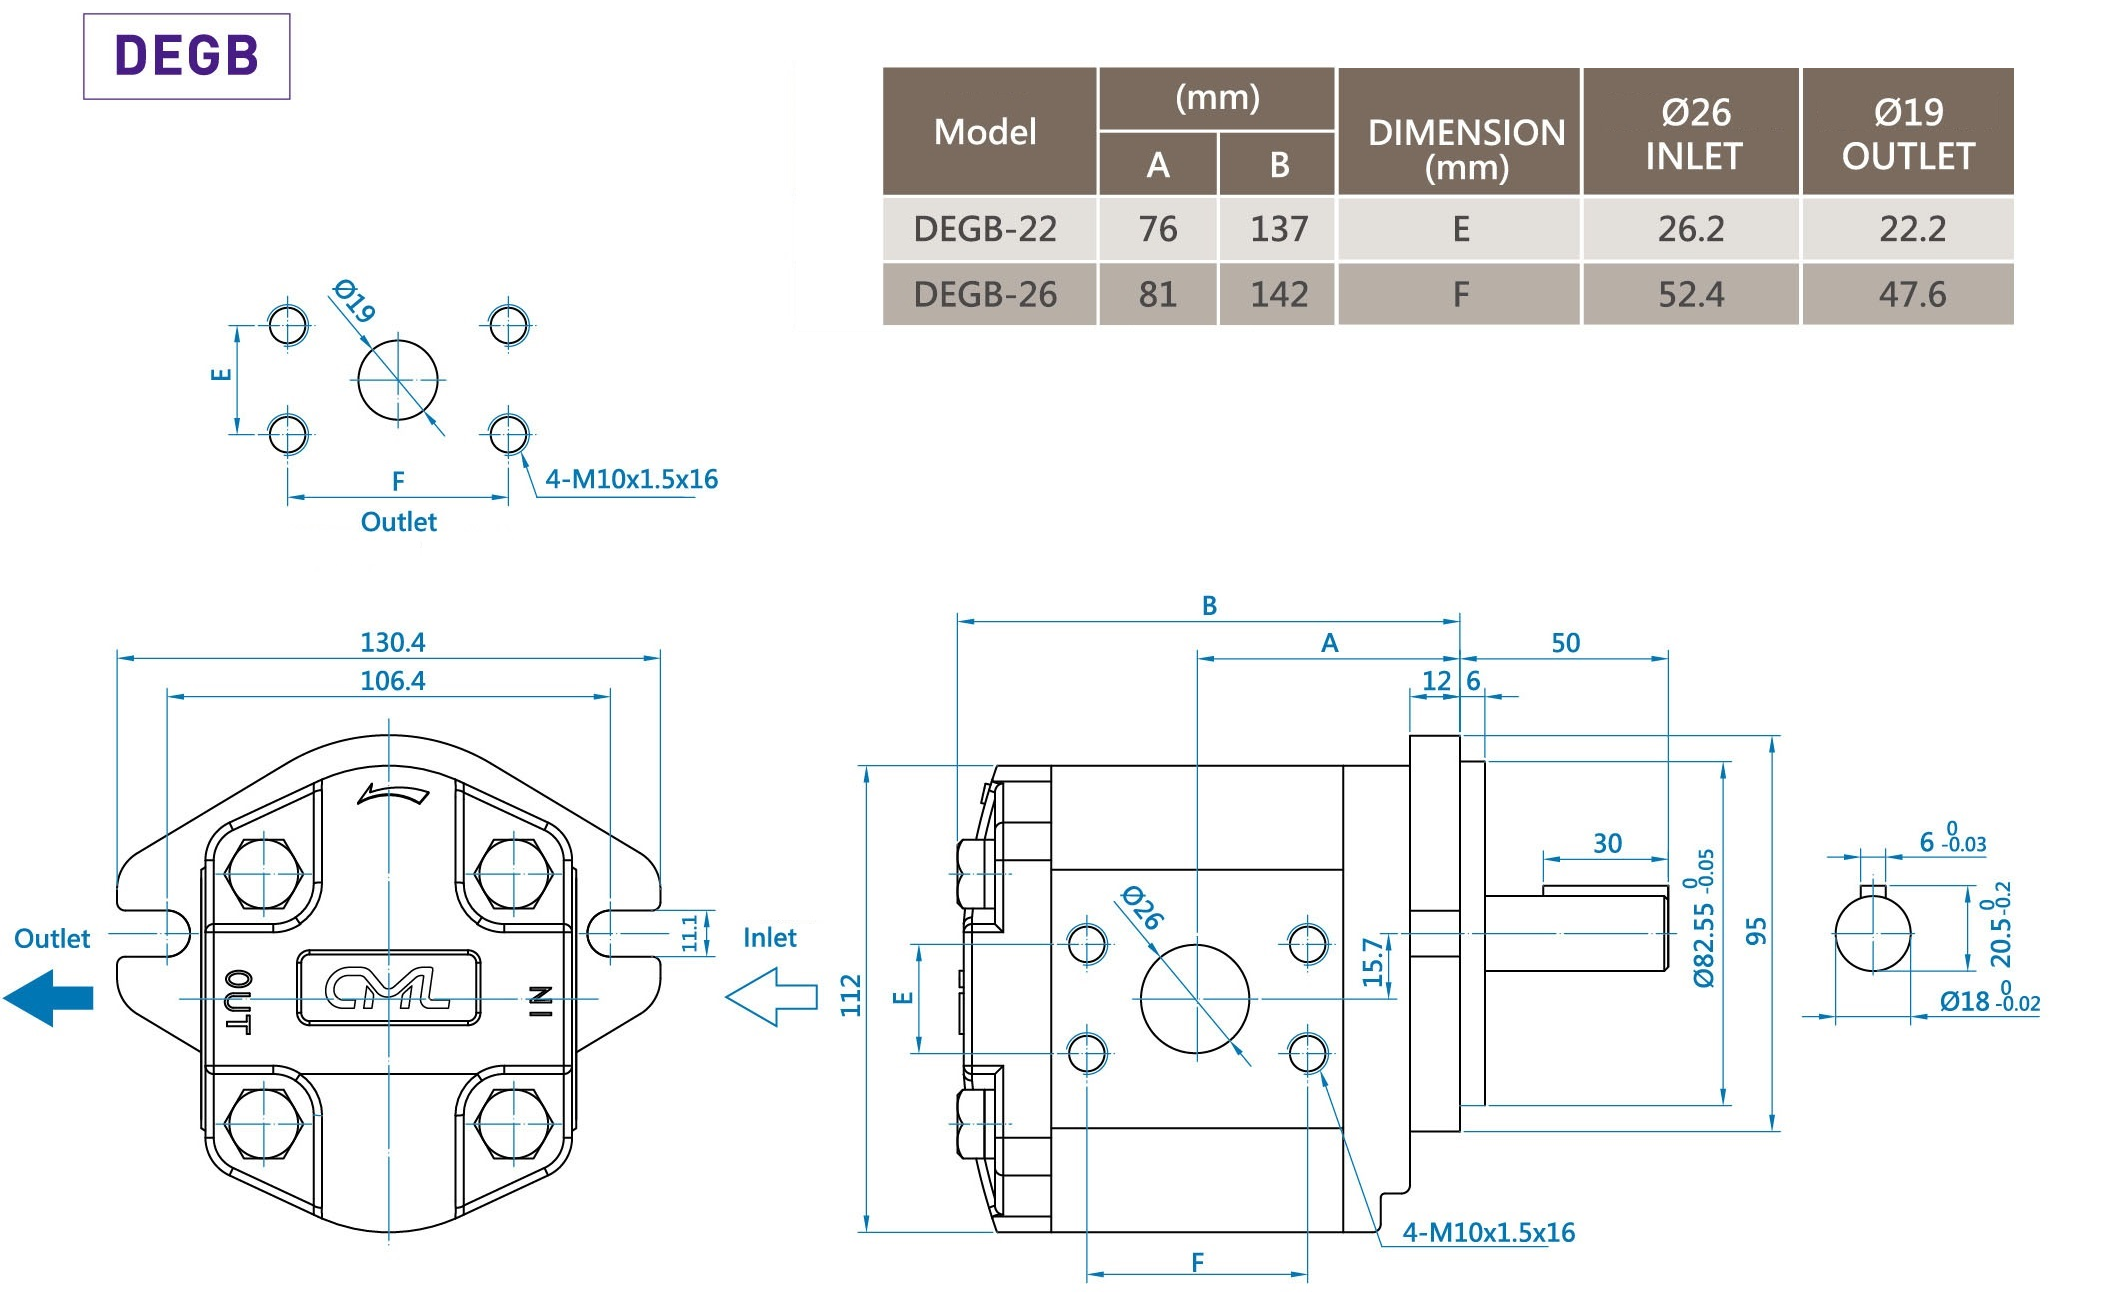 CML Bomba de Engrenagem Externa de Dupla Engrenagem Série B DEGB Medição, Dimensão, Diagrama